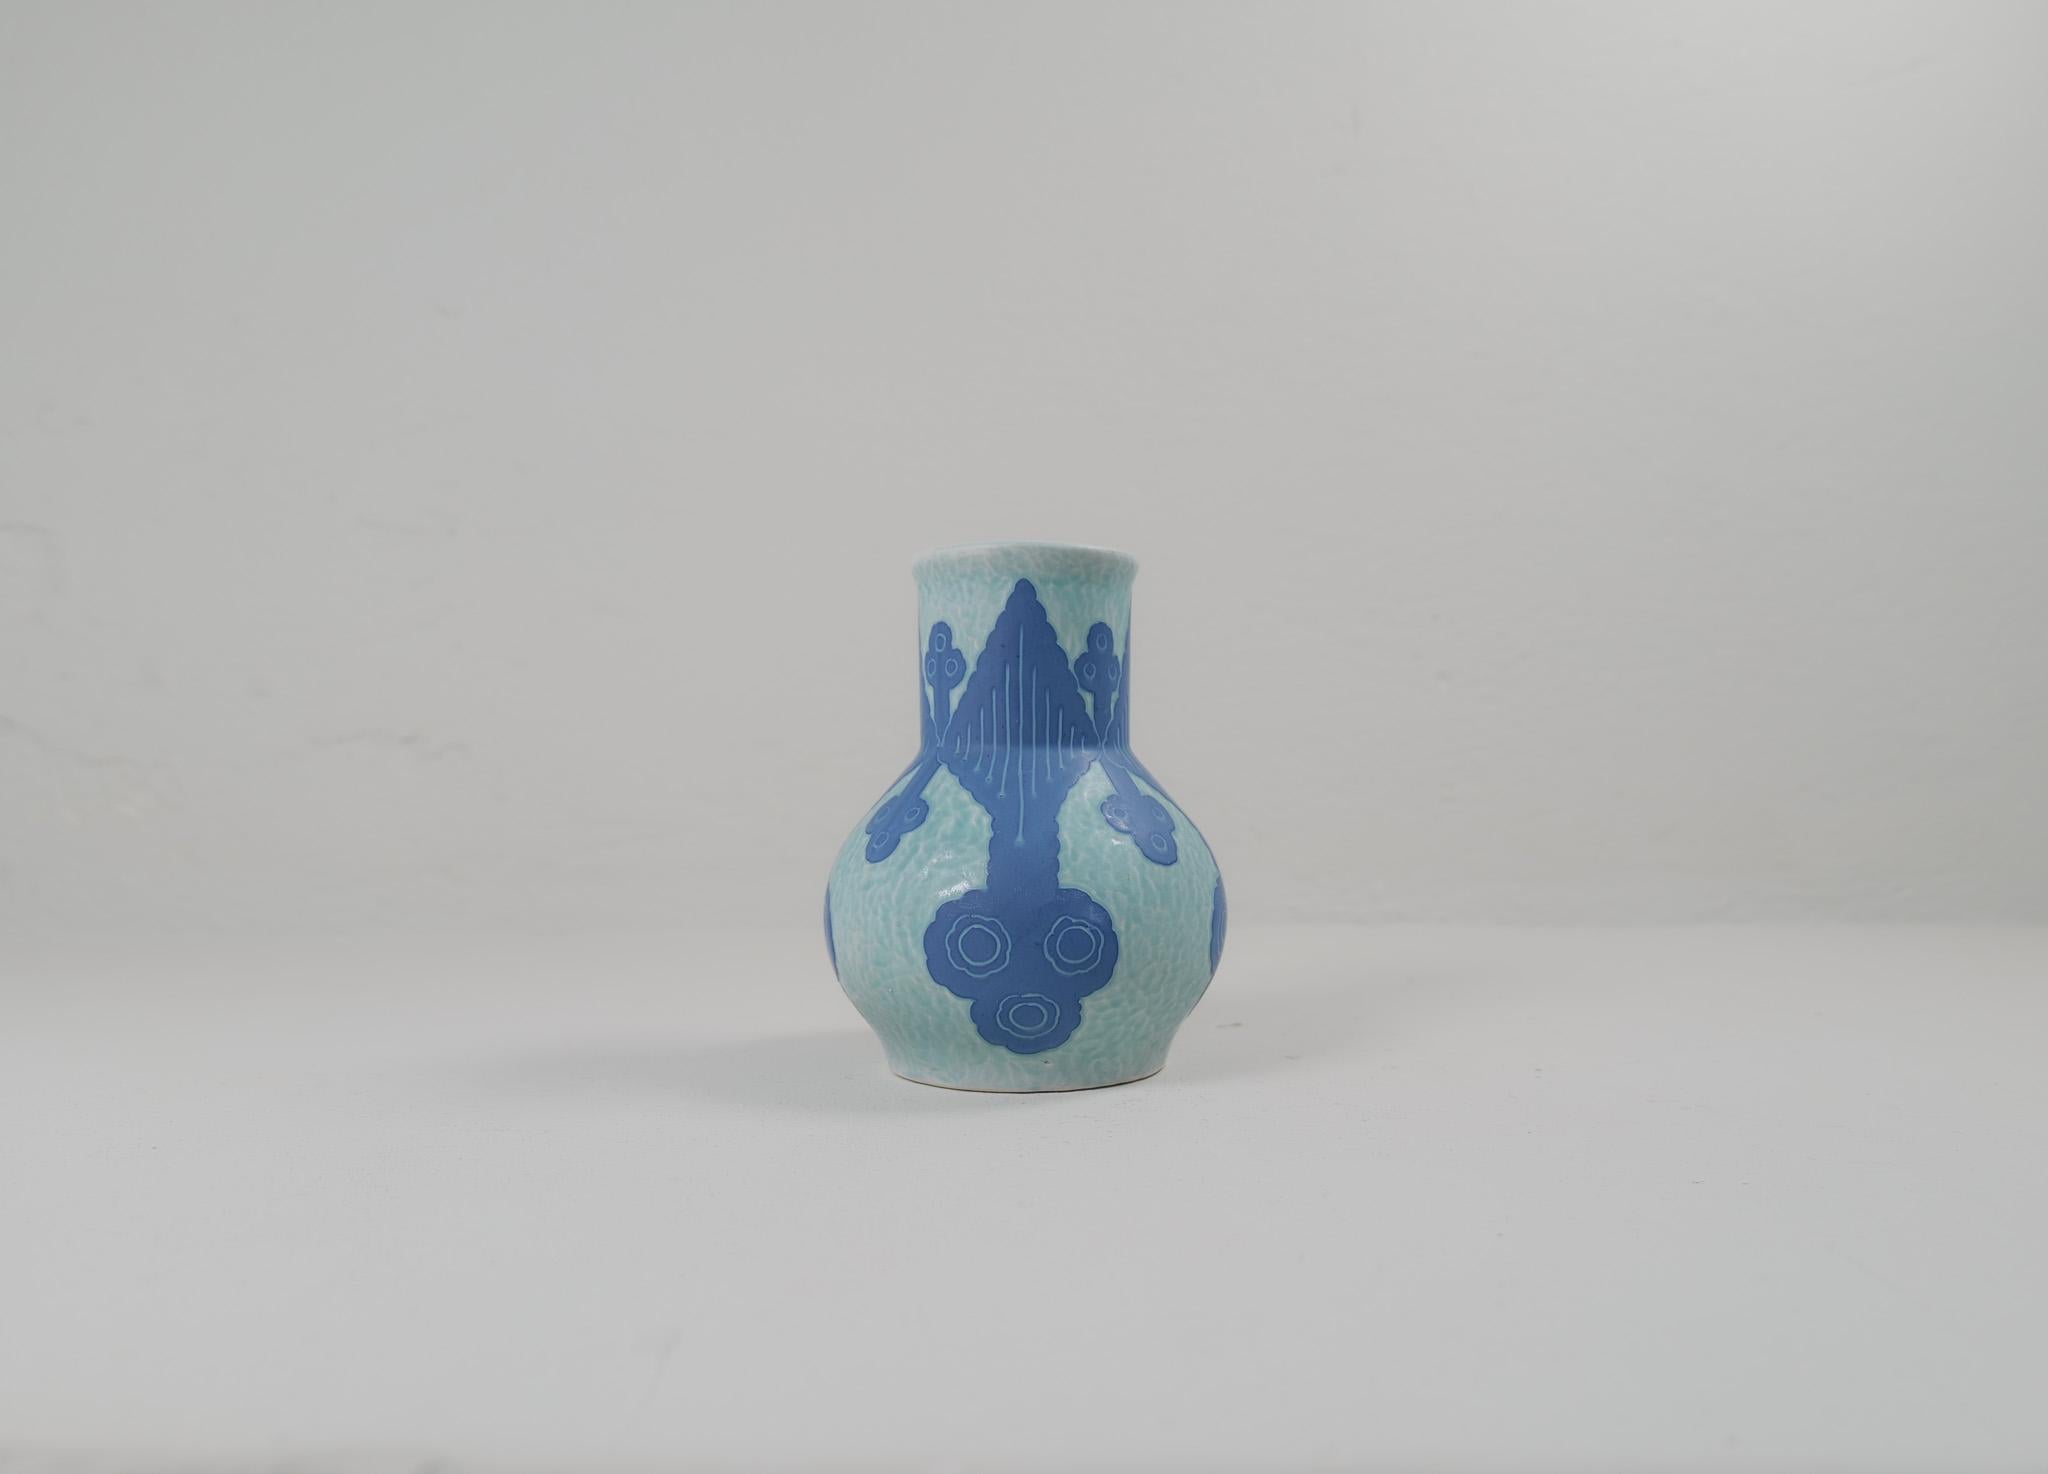 Vase en sgraffite décoré d'un motif floral, par Josef Ekberg pour Gustavsberg.
Le sgraffito est une façon de combiner deux couches pour créer un motif. La deuxième couche est enlevée et il reste un fond bleu clair avec un beau motif sur le